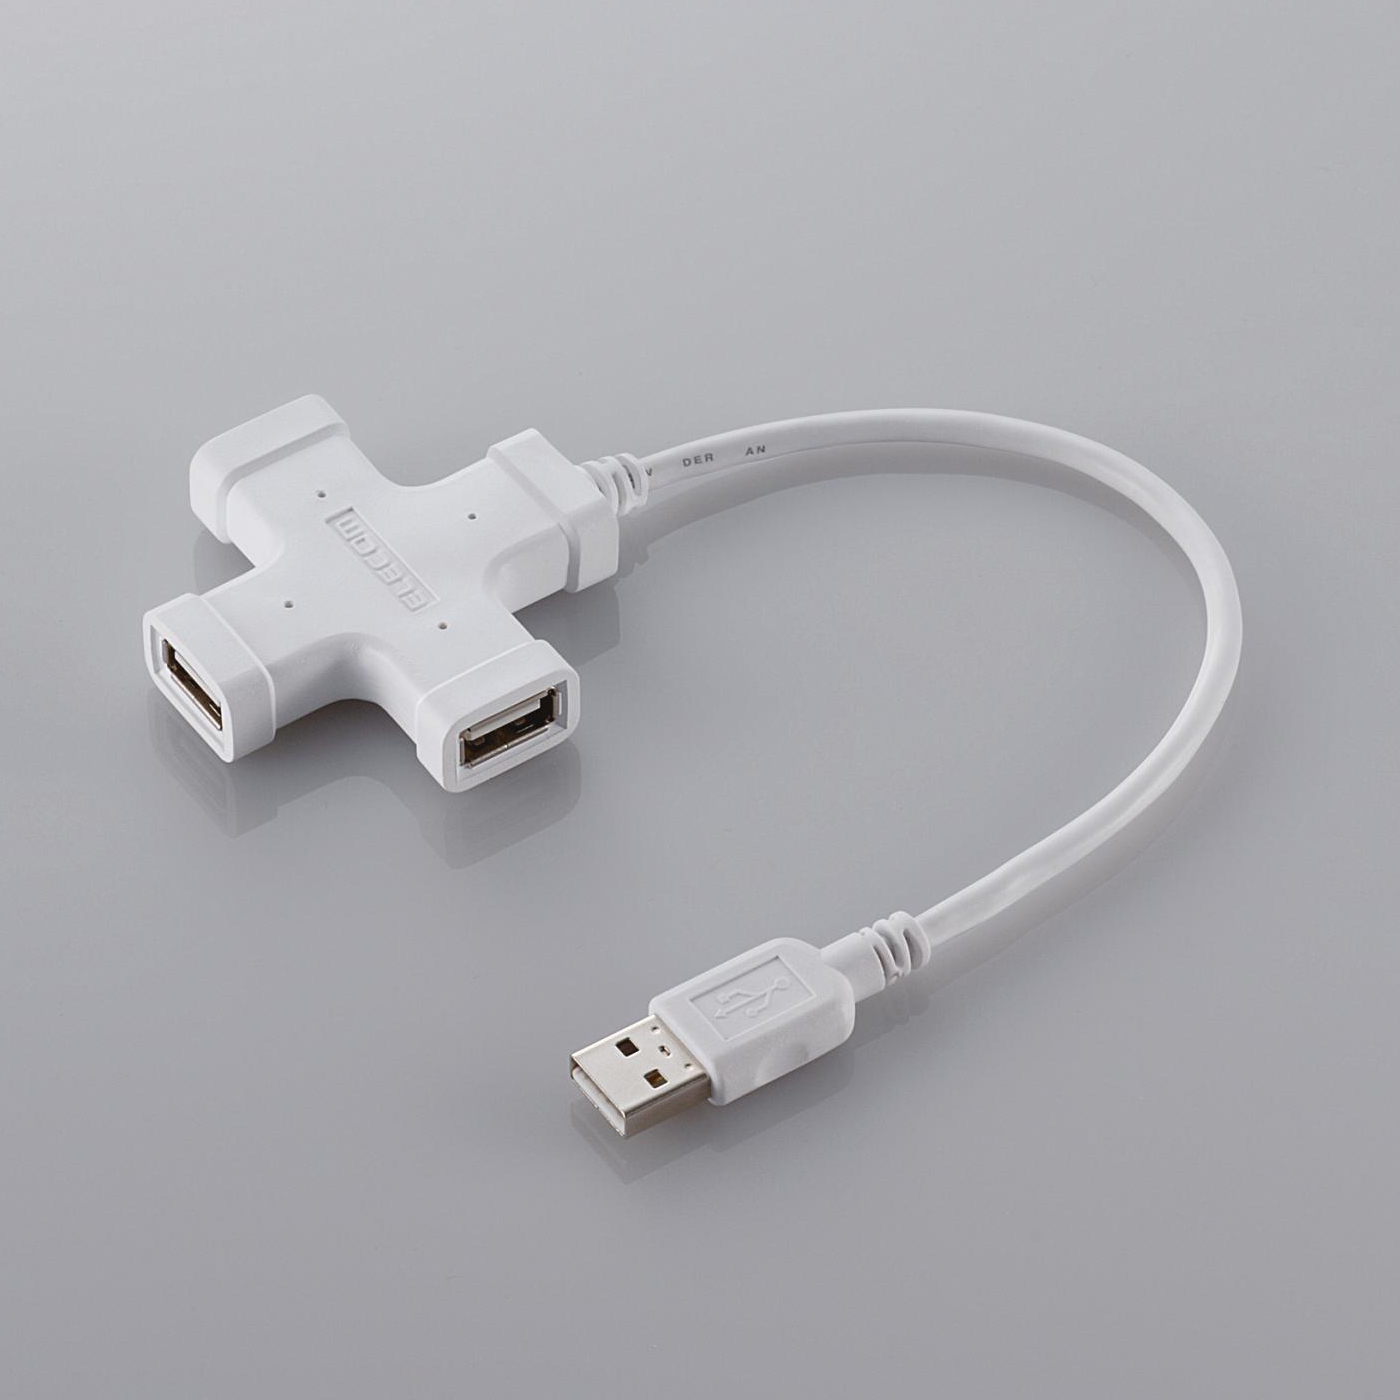 Immagine pubblicata in relazione al seguente contenuto: Da Elecom tre nuovi HUB USB 2.0 dal design atipico | Nome immagine: news4381_9.jpg